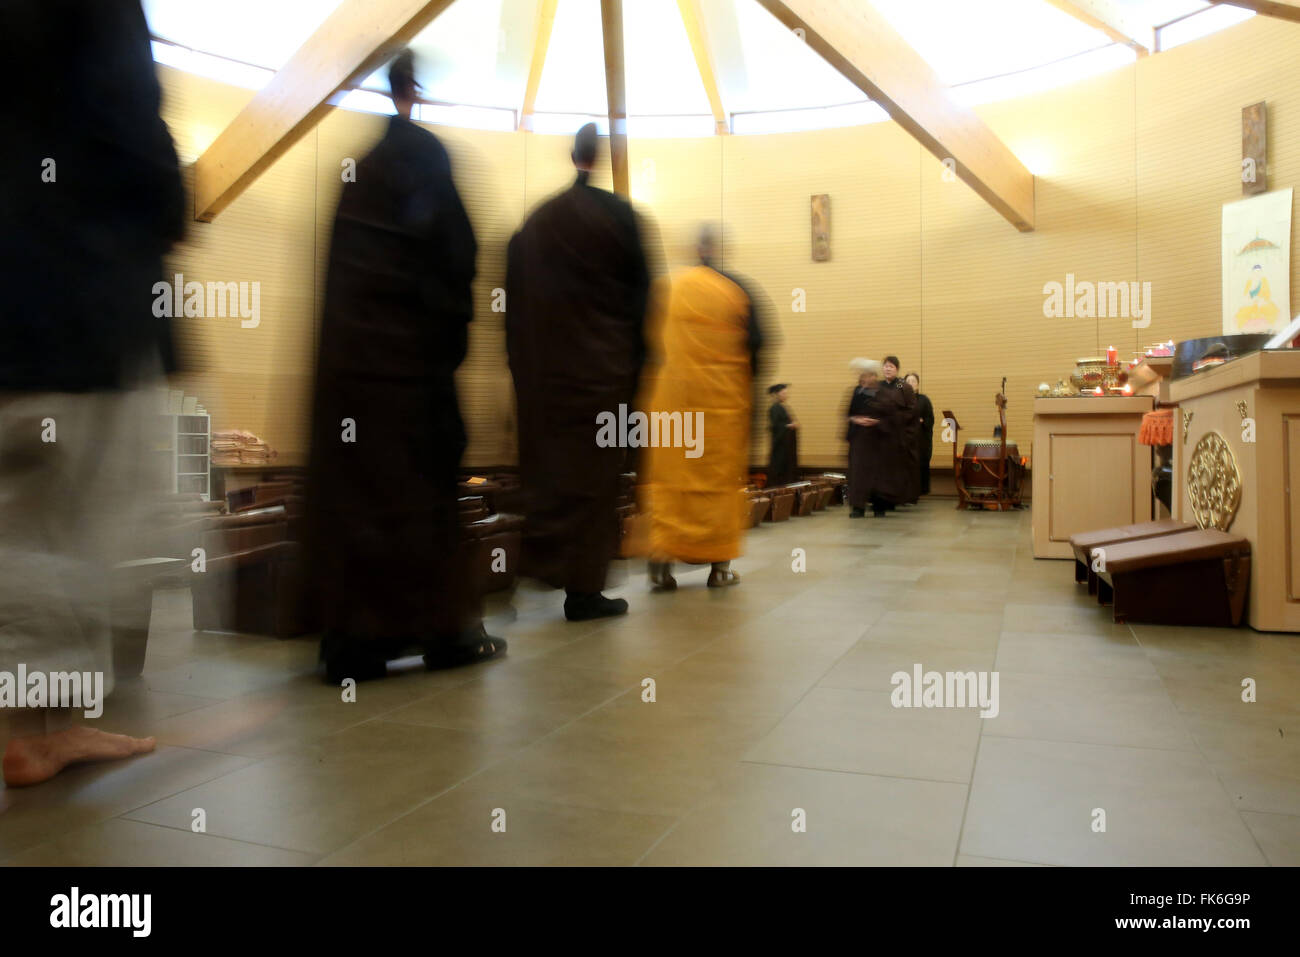 La méditation en marchant, cérémonie bouddhiste, Temple Fo Guang Shan, Genève, Suisse, Europe Banque D'Images